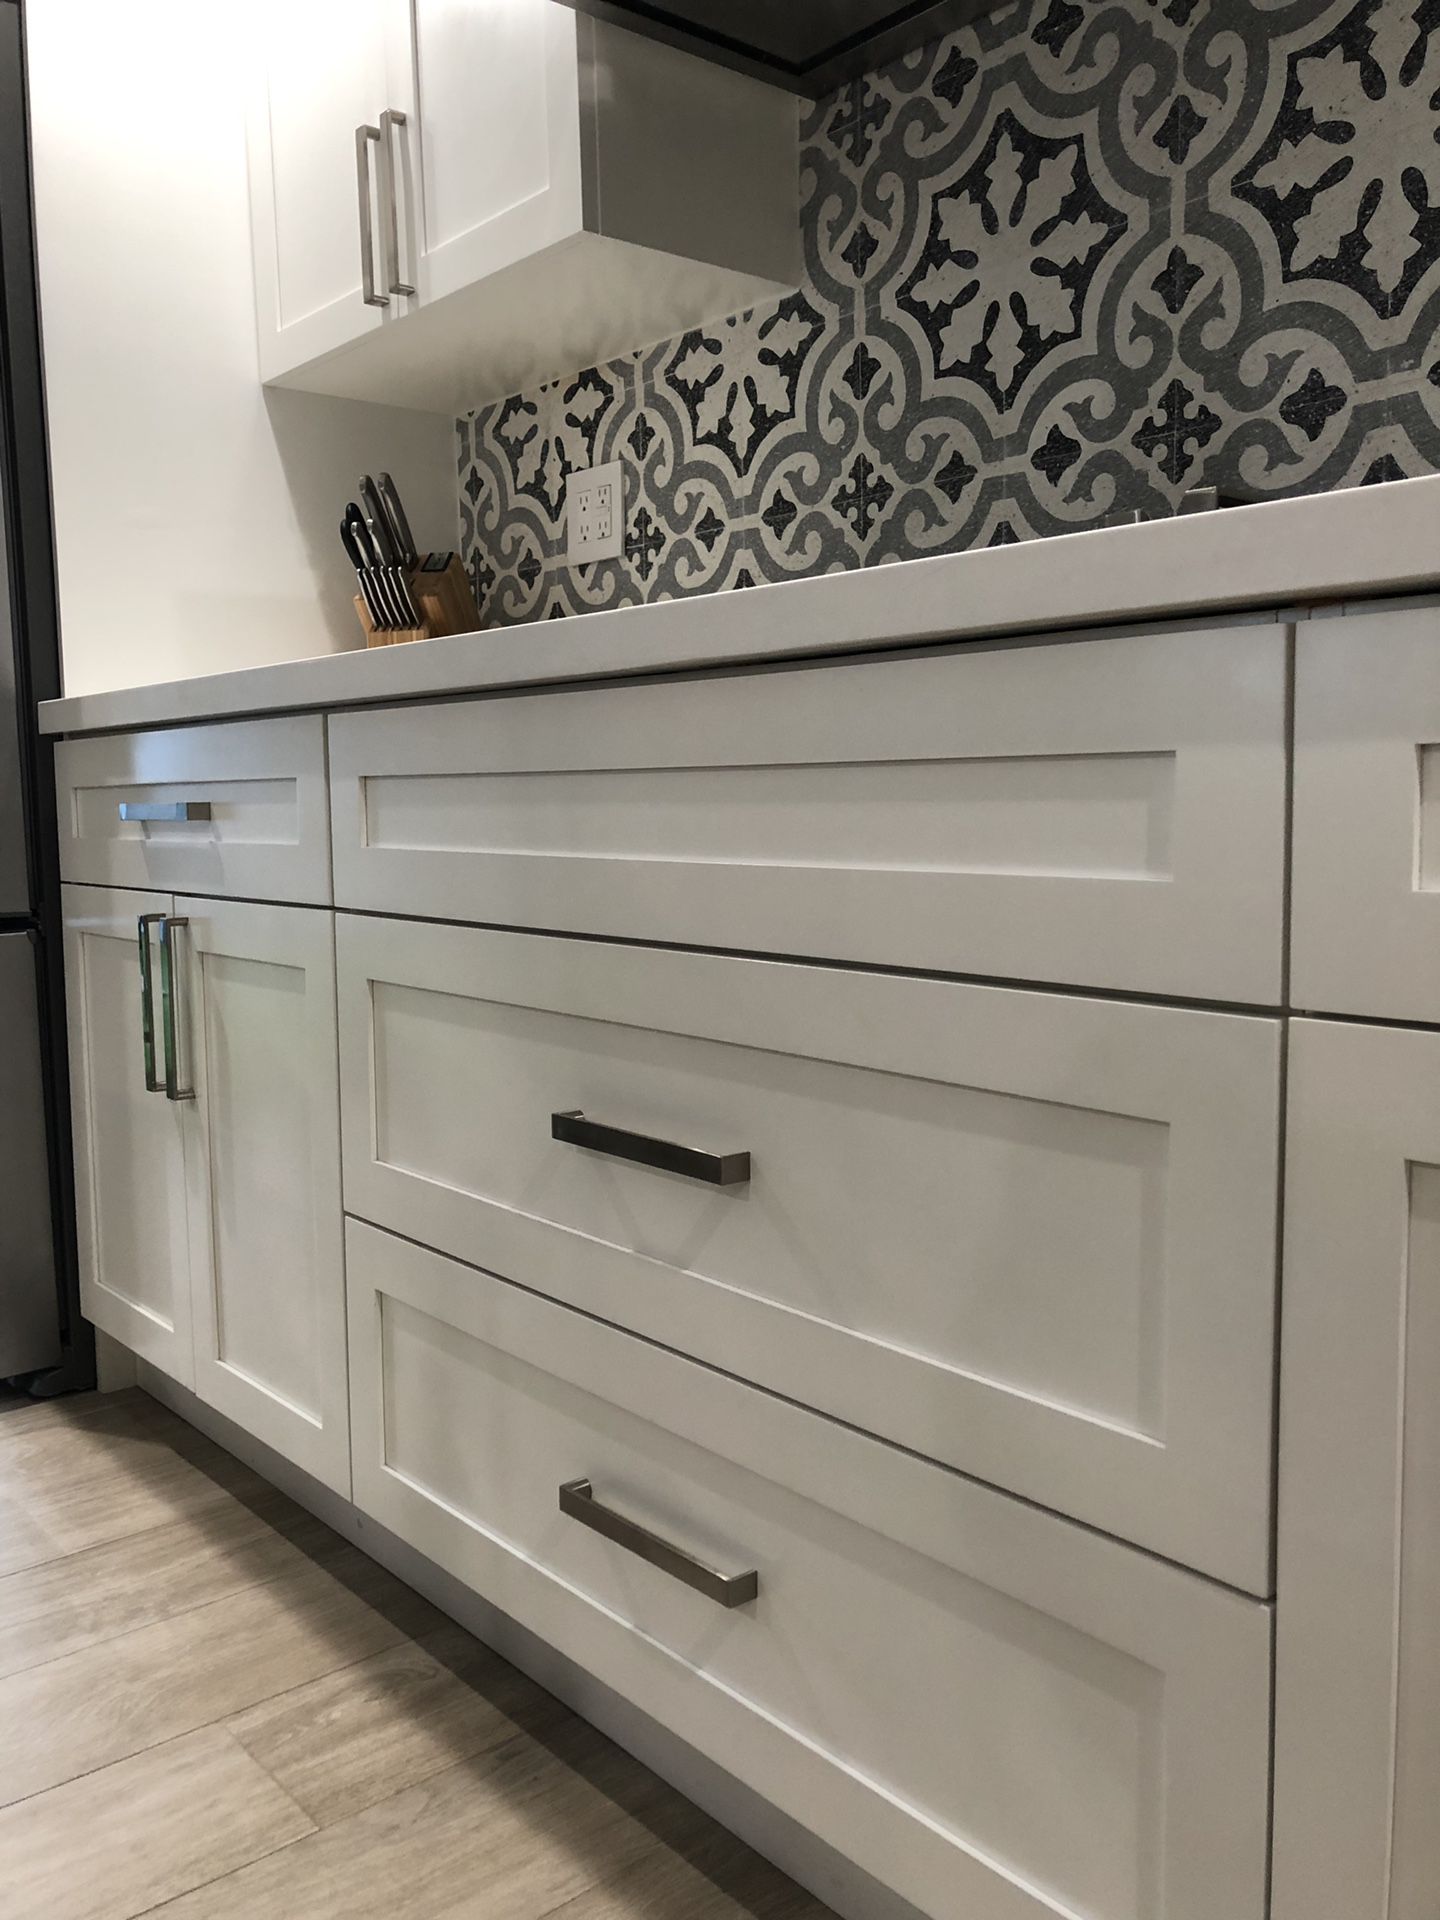 Kitchen cabinet door pulls hardware